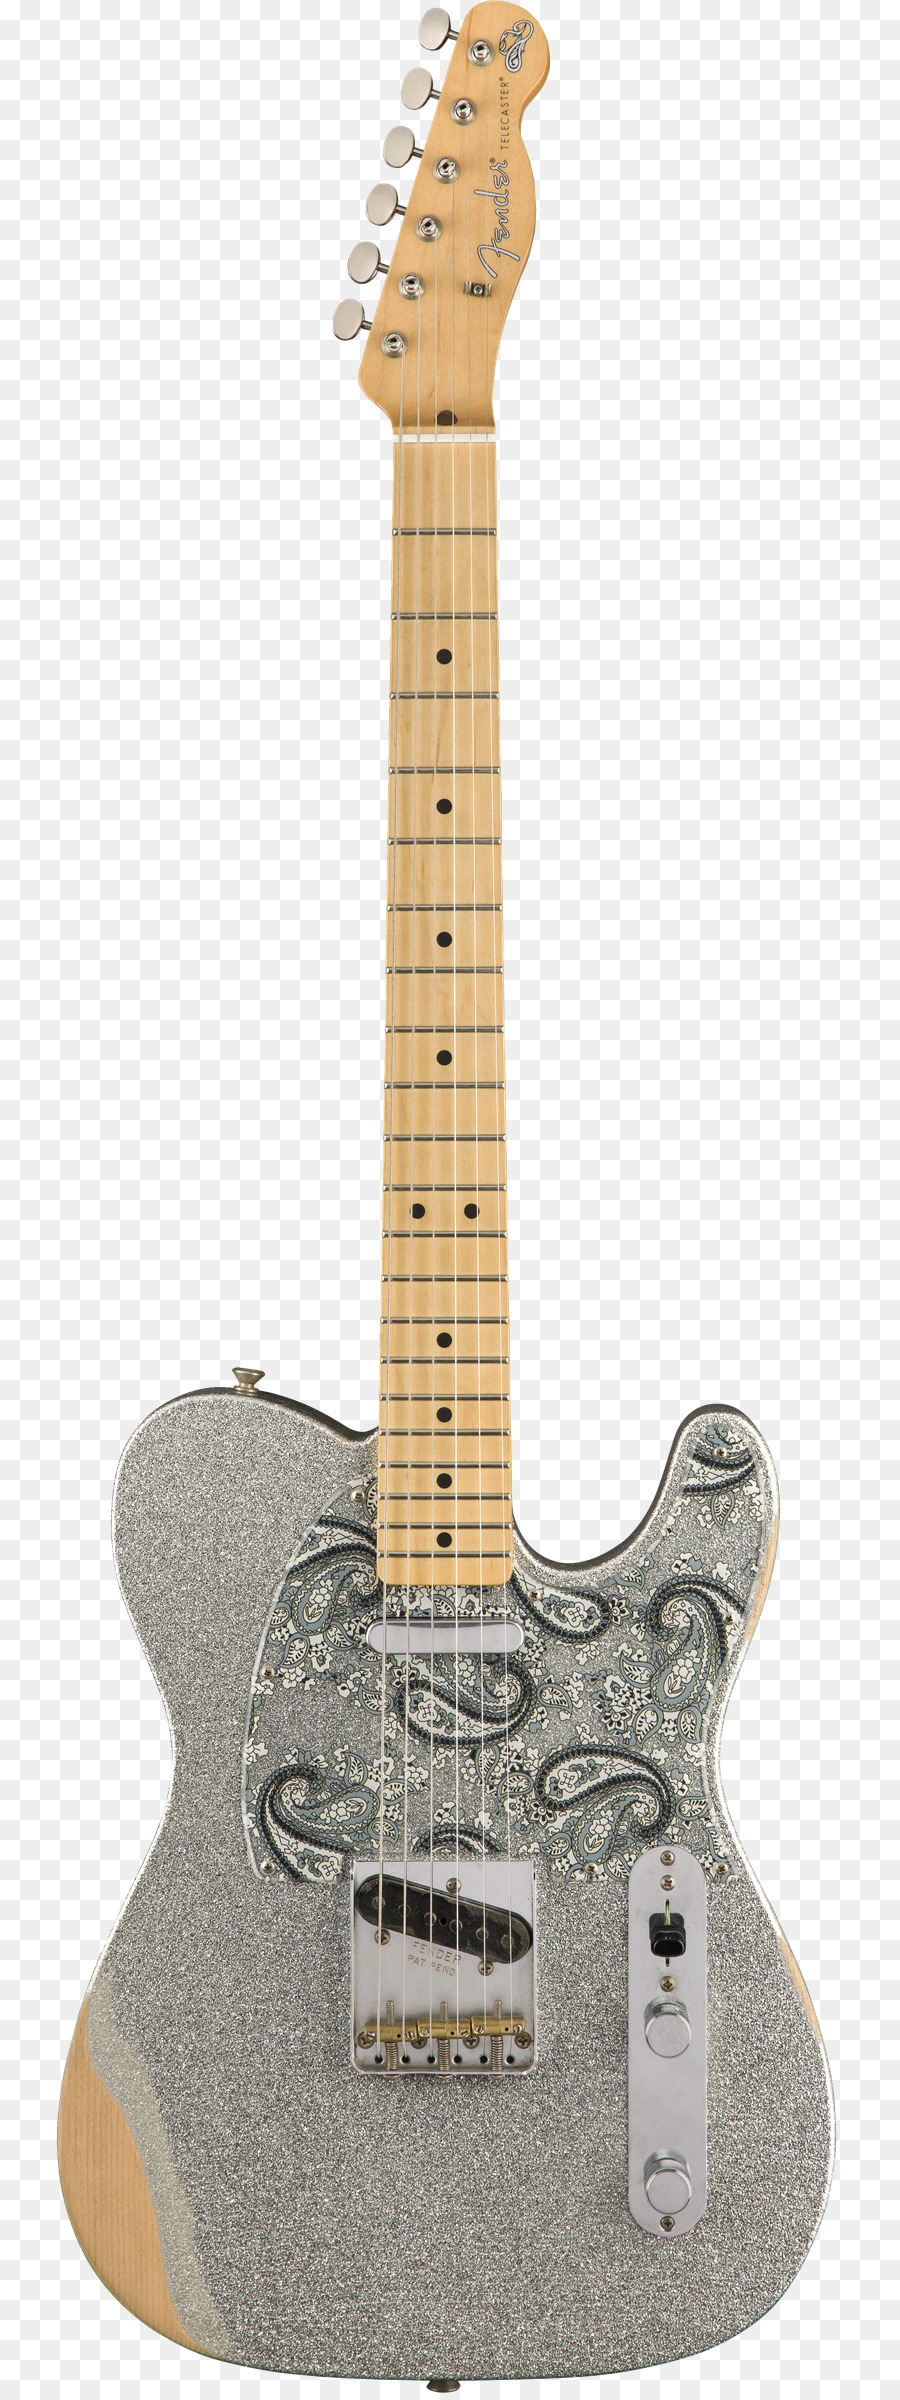 Fender Telecaster Thinline Gitarre, Musikinstrumente, Fender Stratocaster - E Gitarre